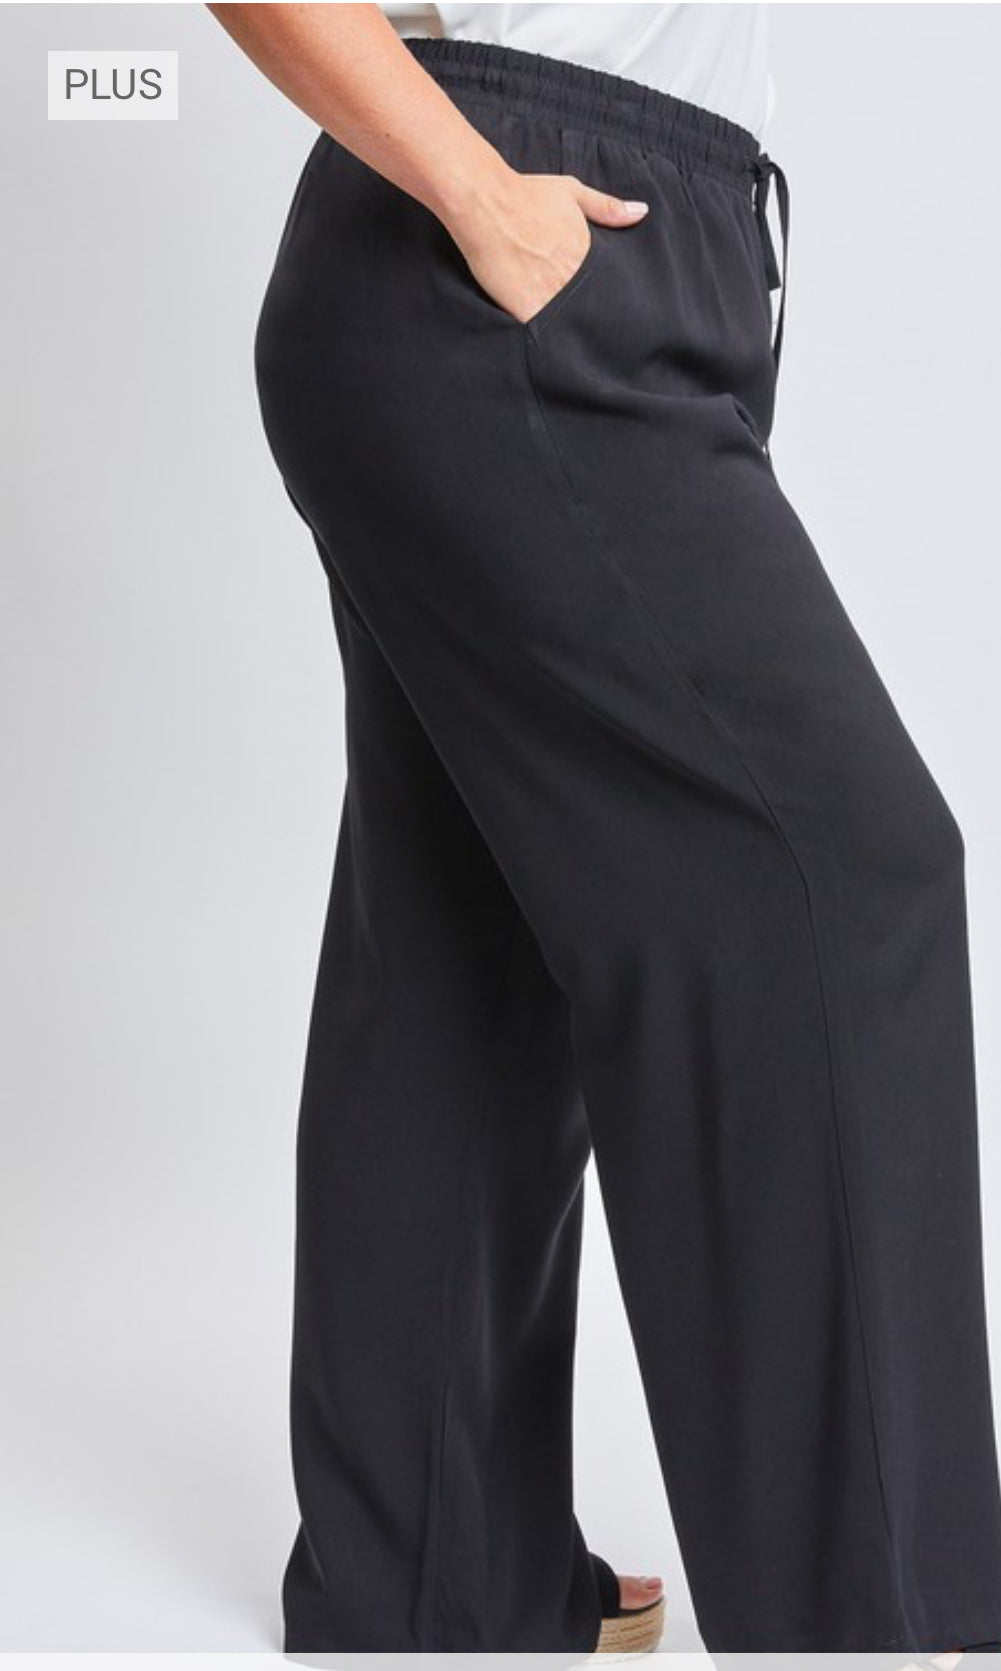 Women Plus Pants/Black-XP715R1